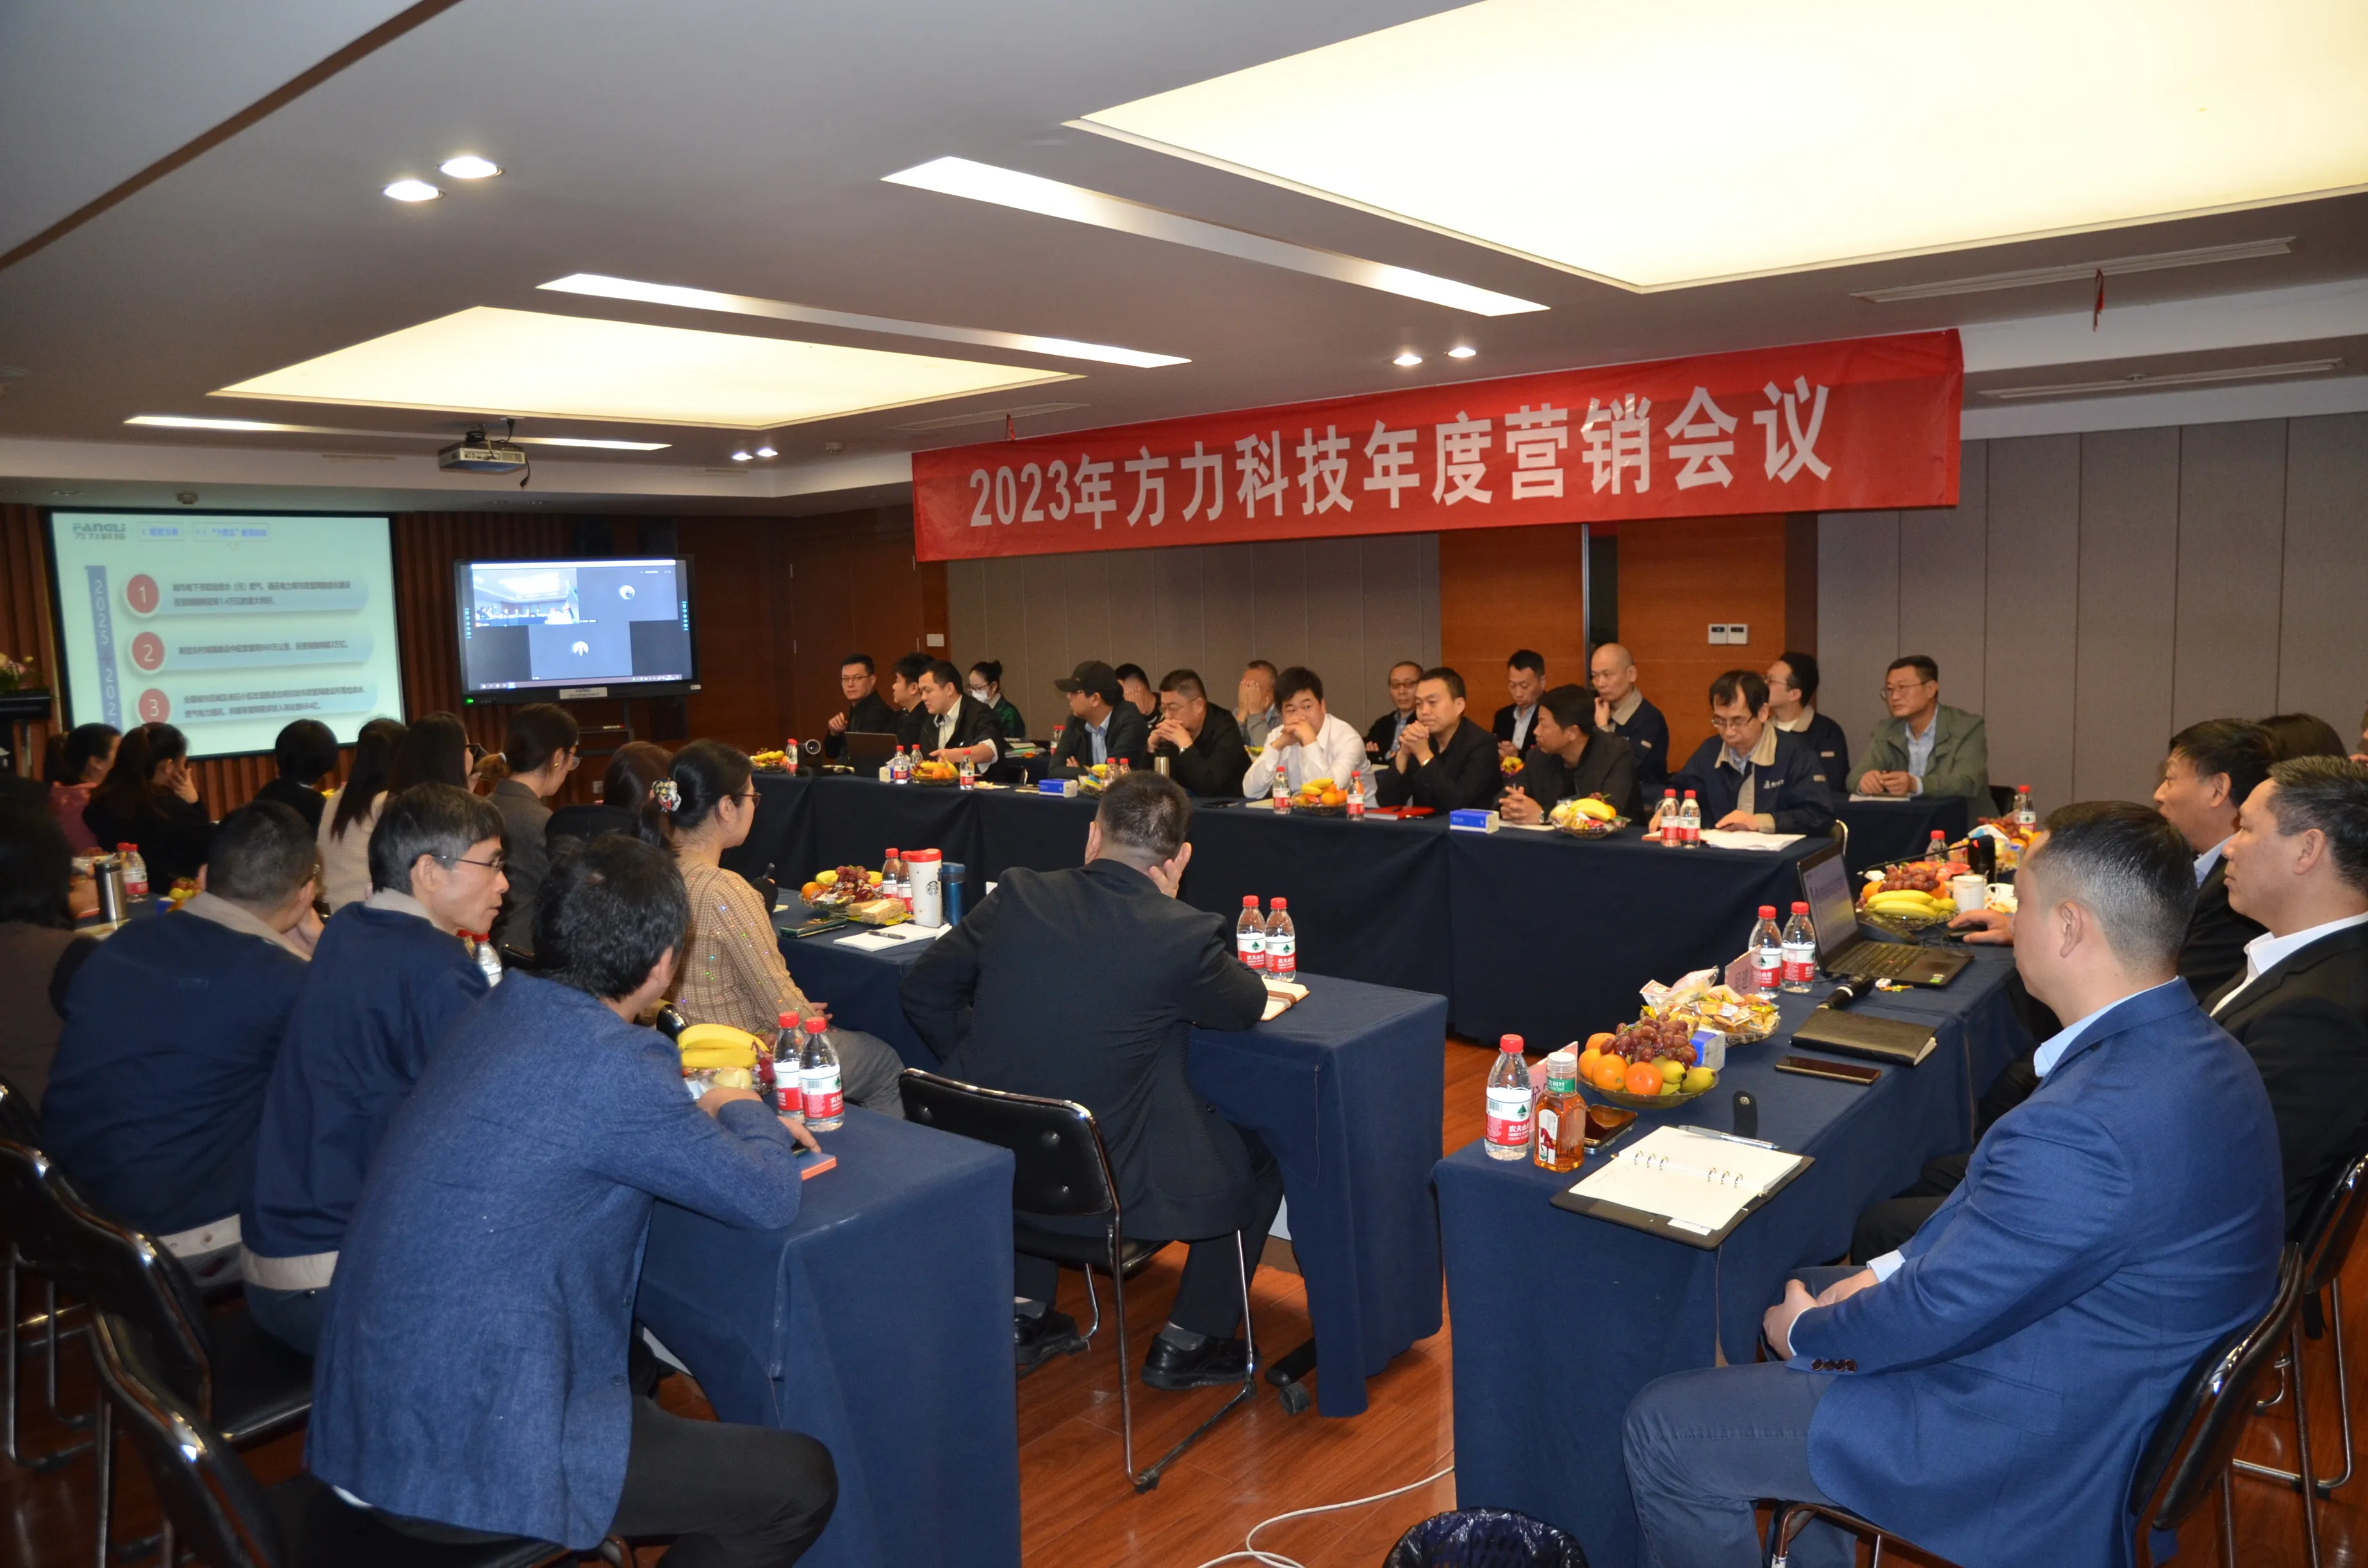 Fangli Technology 2023 årliga marknadsföringskonferens